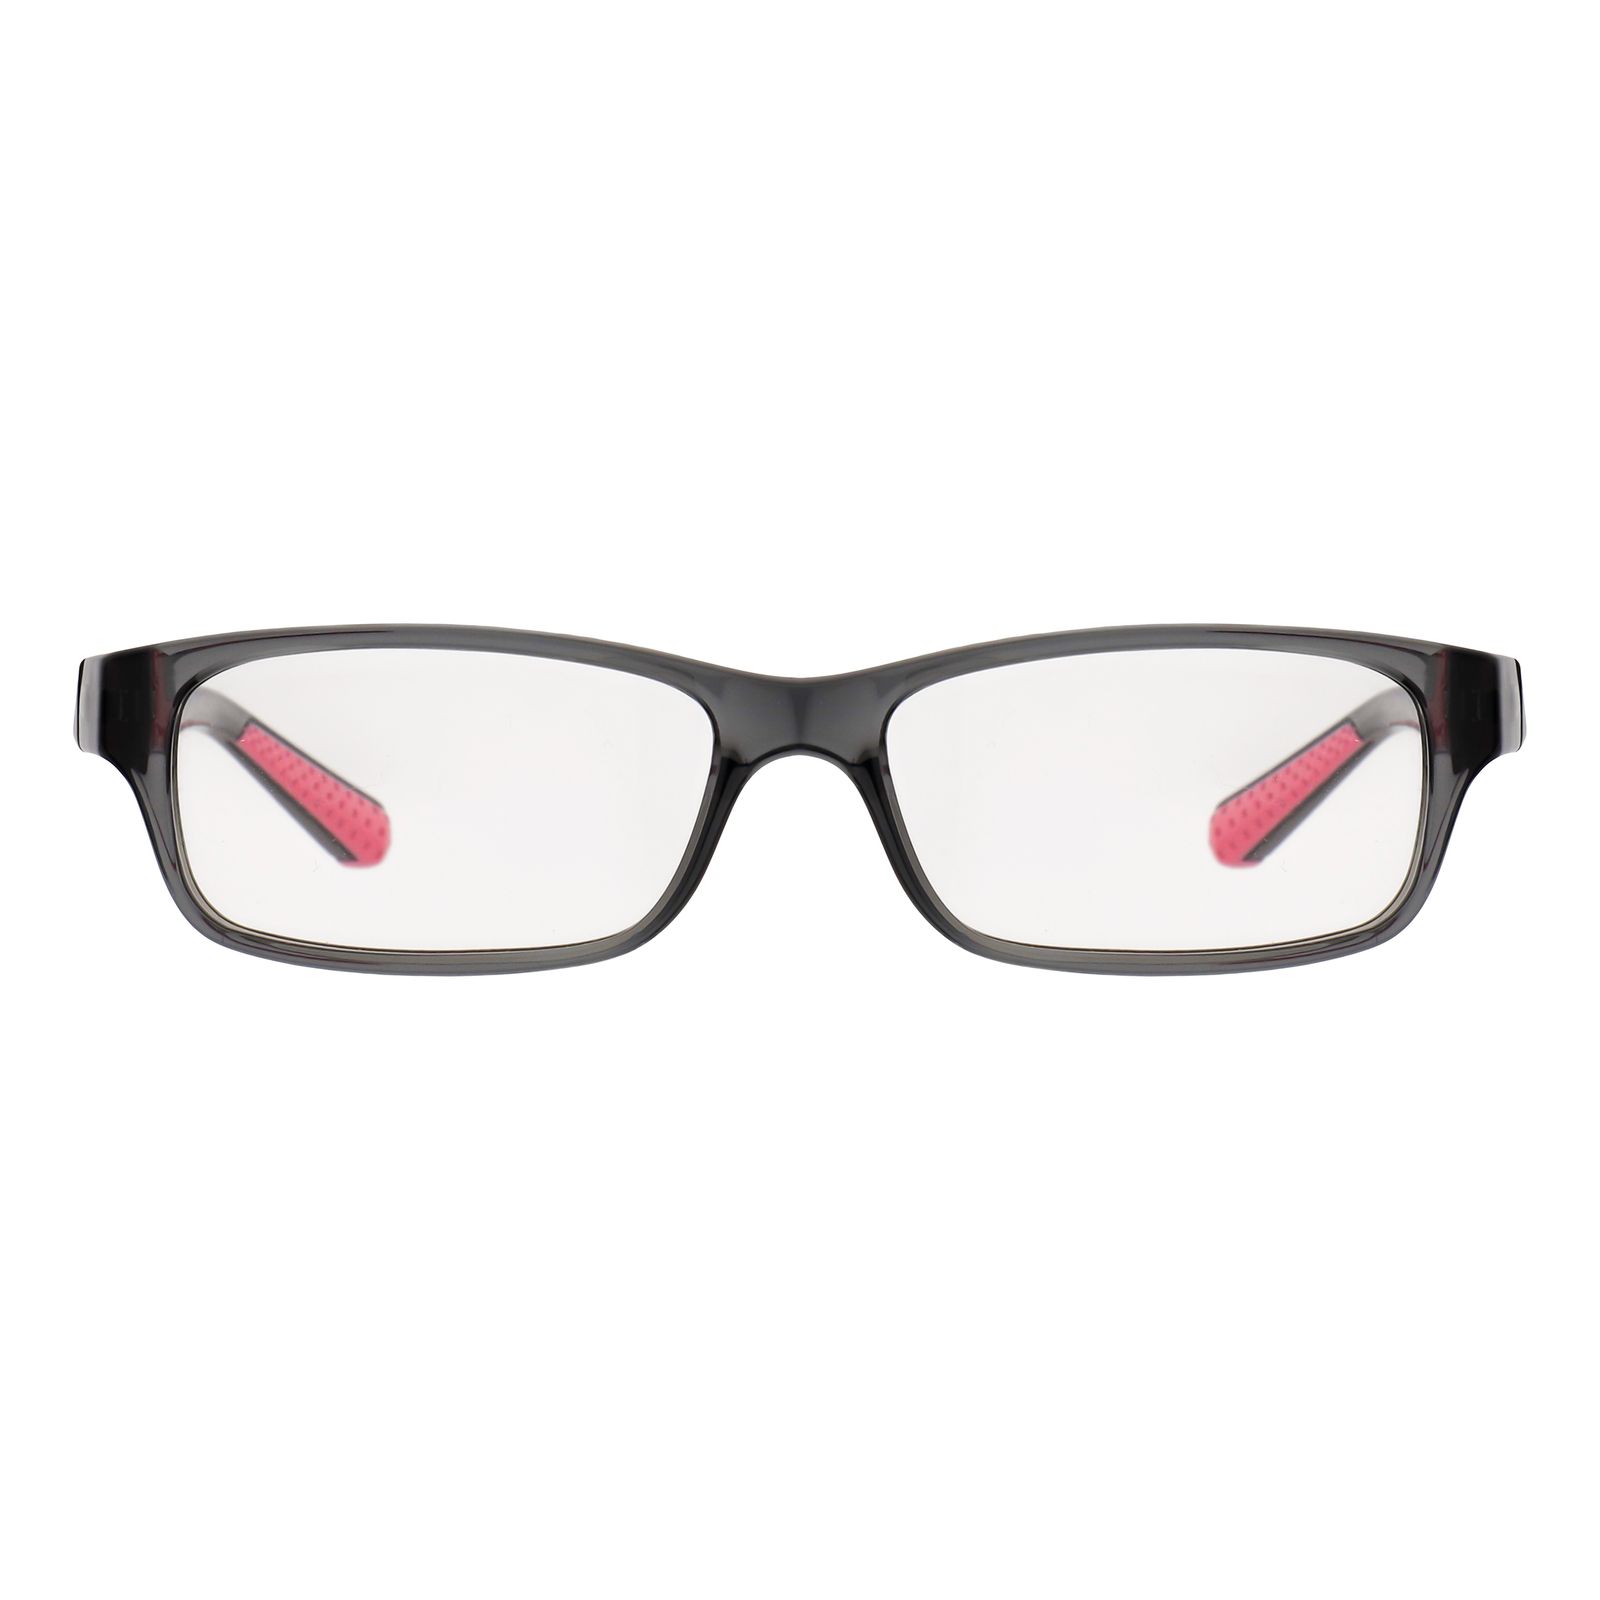 فریم عینک طبی نایک مدل 5534-68 -  - 1